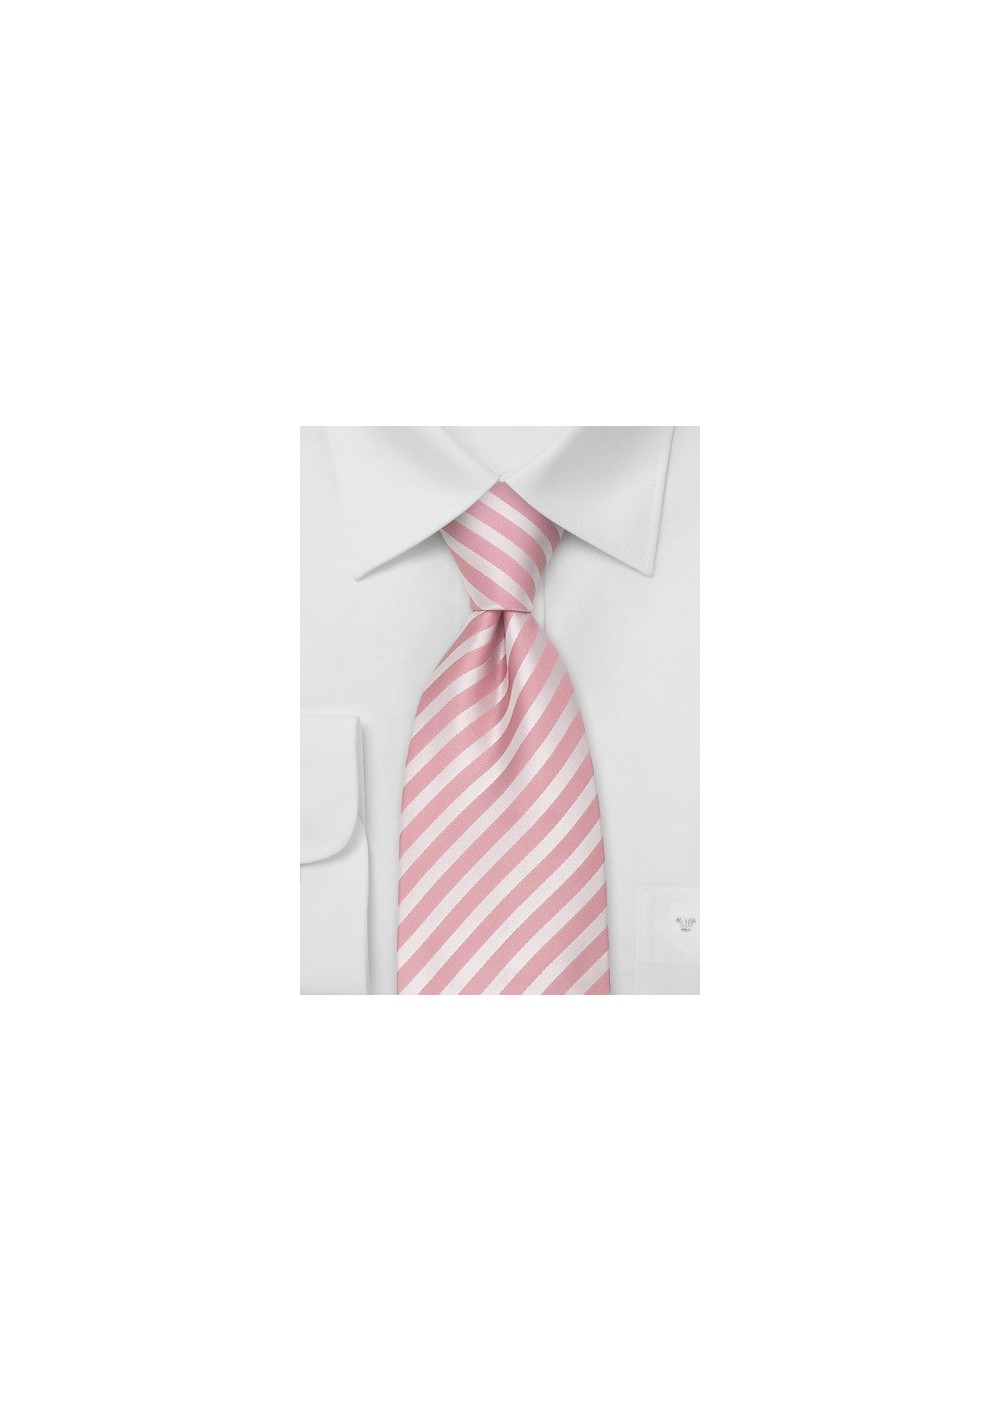 Pink Neckties - Modern Striped Pink Tie